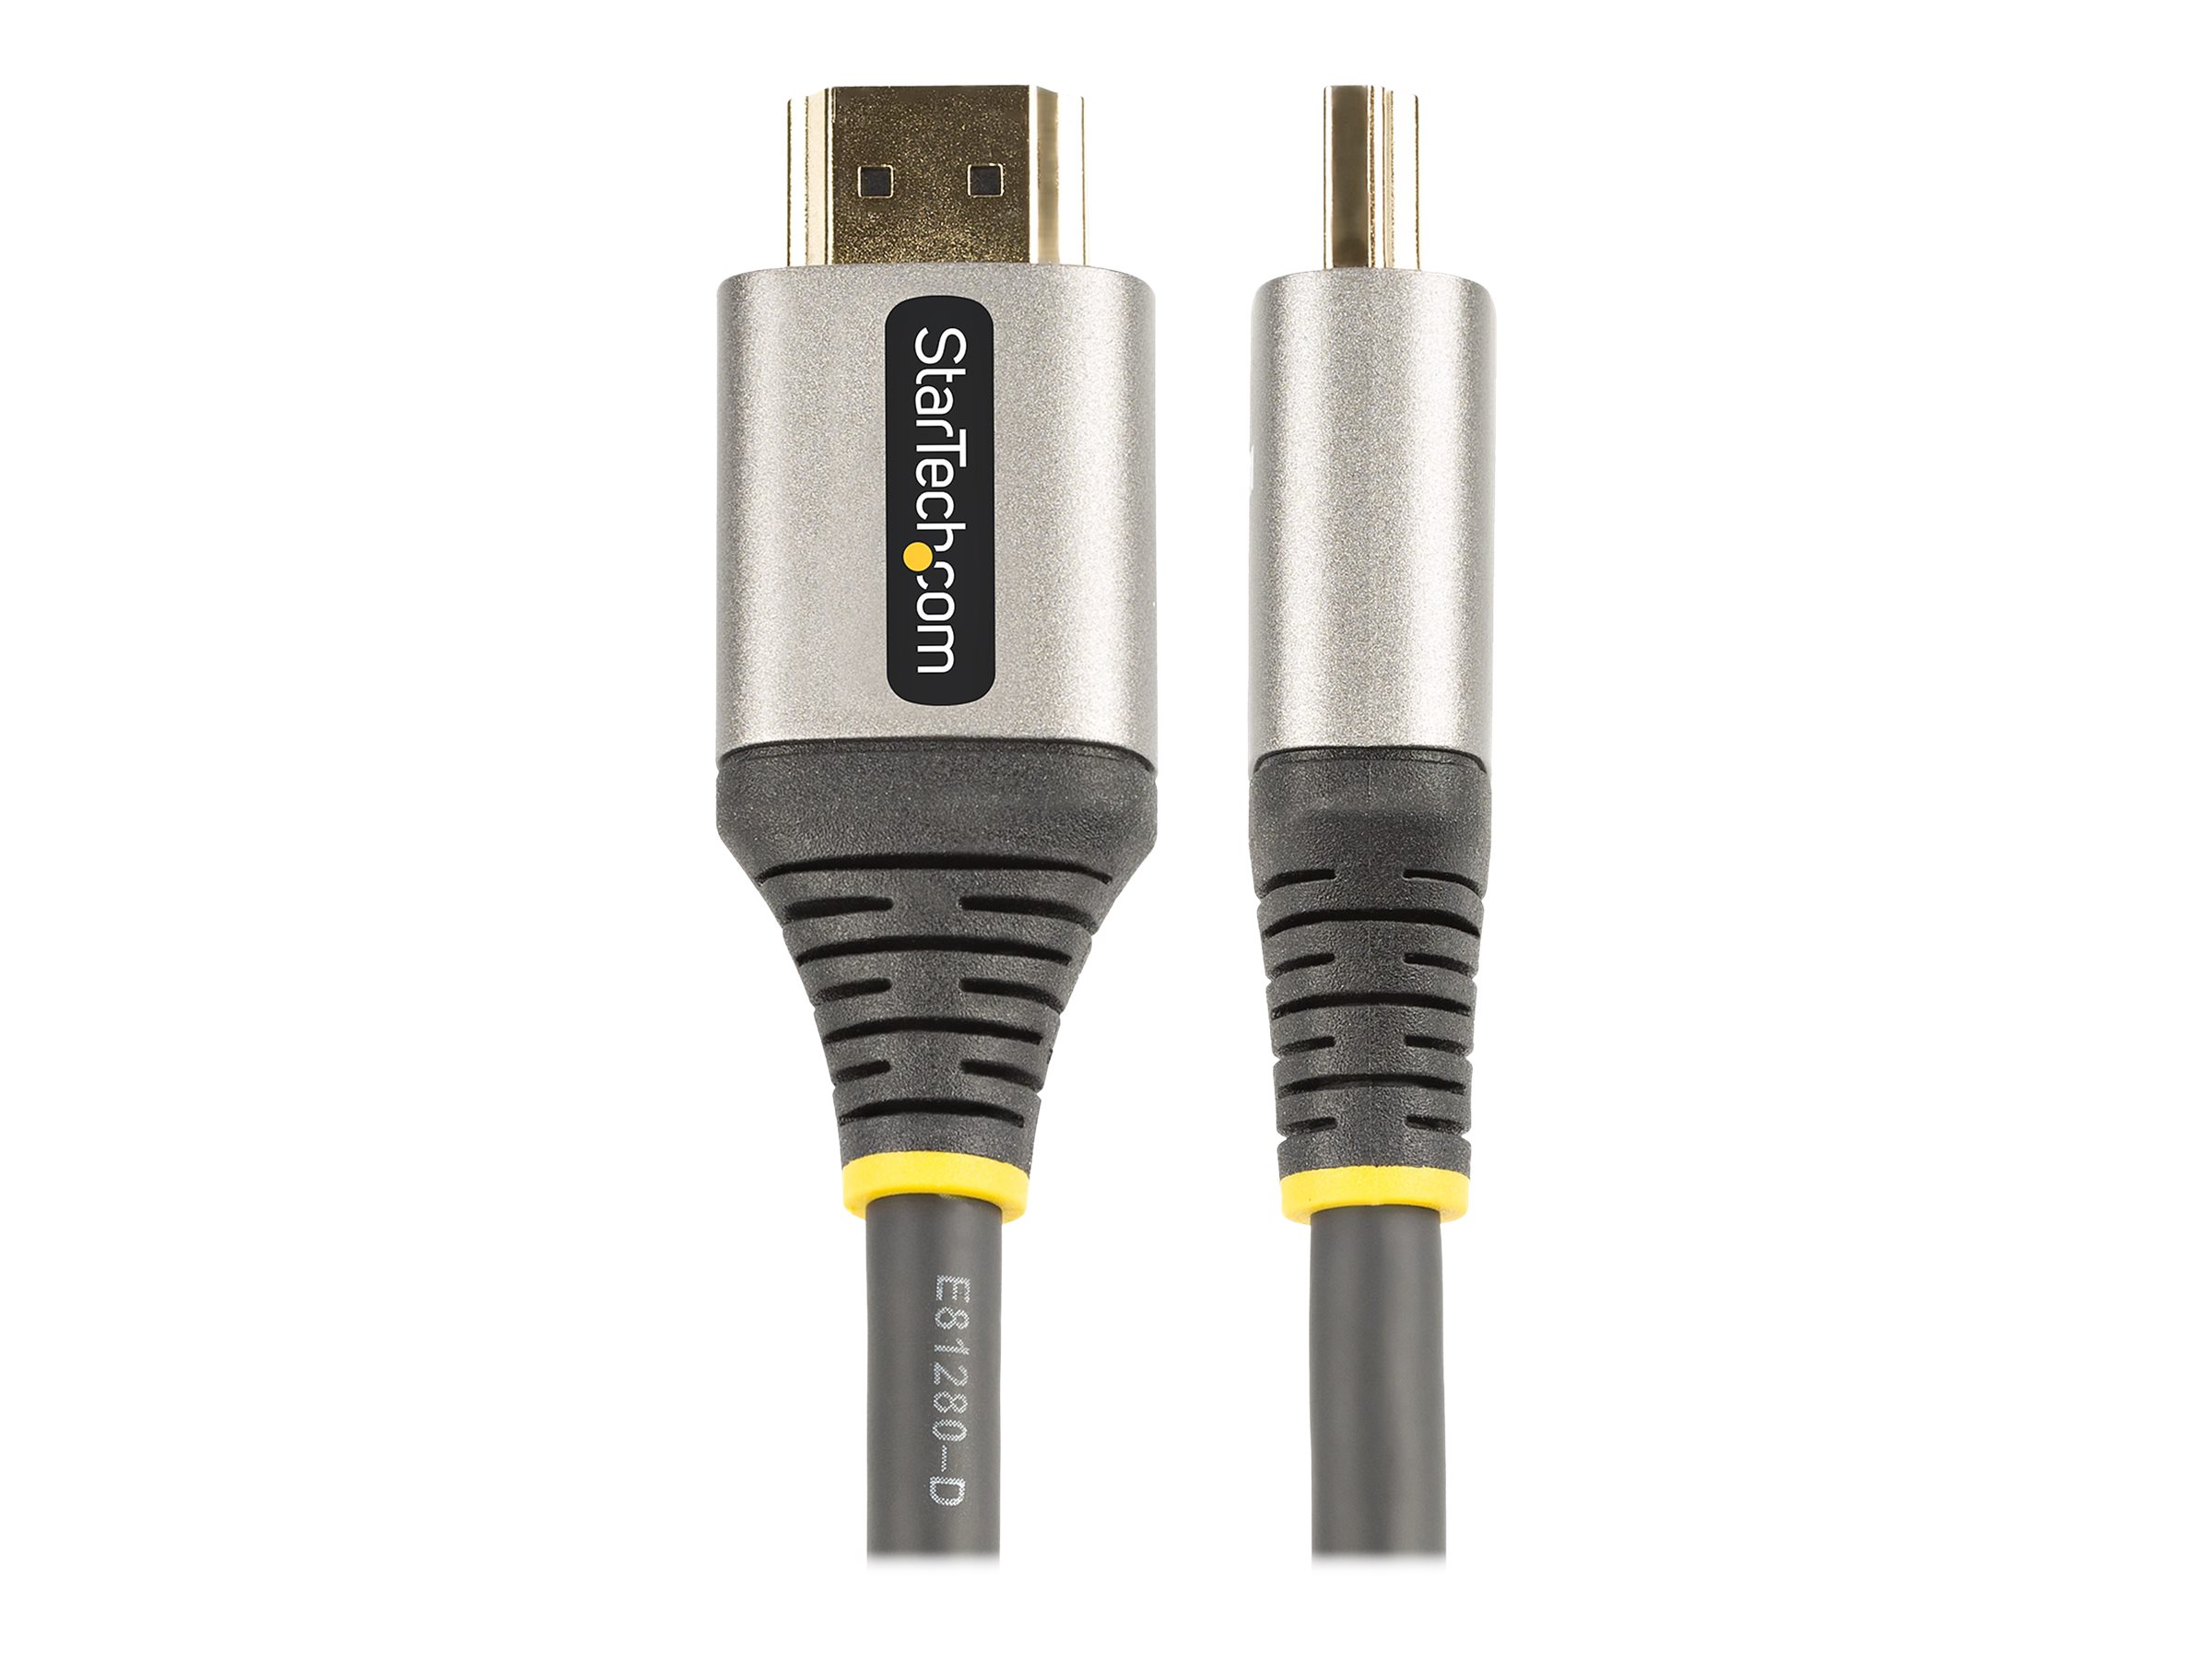 StarTech.com 1m Premium zertifiziertes HDMI 2.0 Kabel - High Speed Ultra HD 4K 60Hz HDMI Kabel mit Ethernet - HDR10, ARC - UHD HDMI Videokabel - Für UHD Monitore, TVs, Displays - M/M (HDMMV1M)